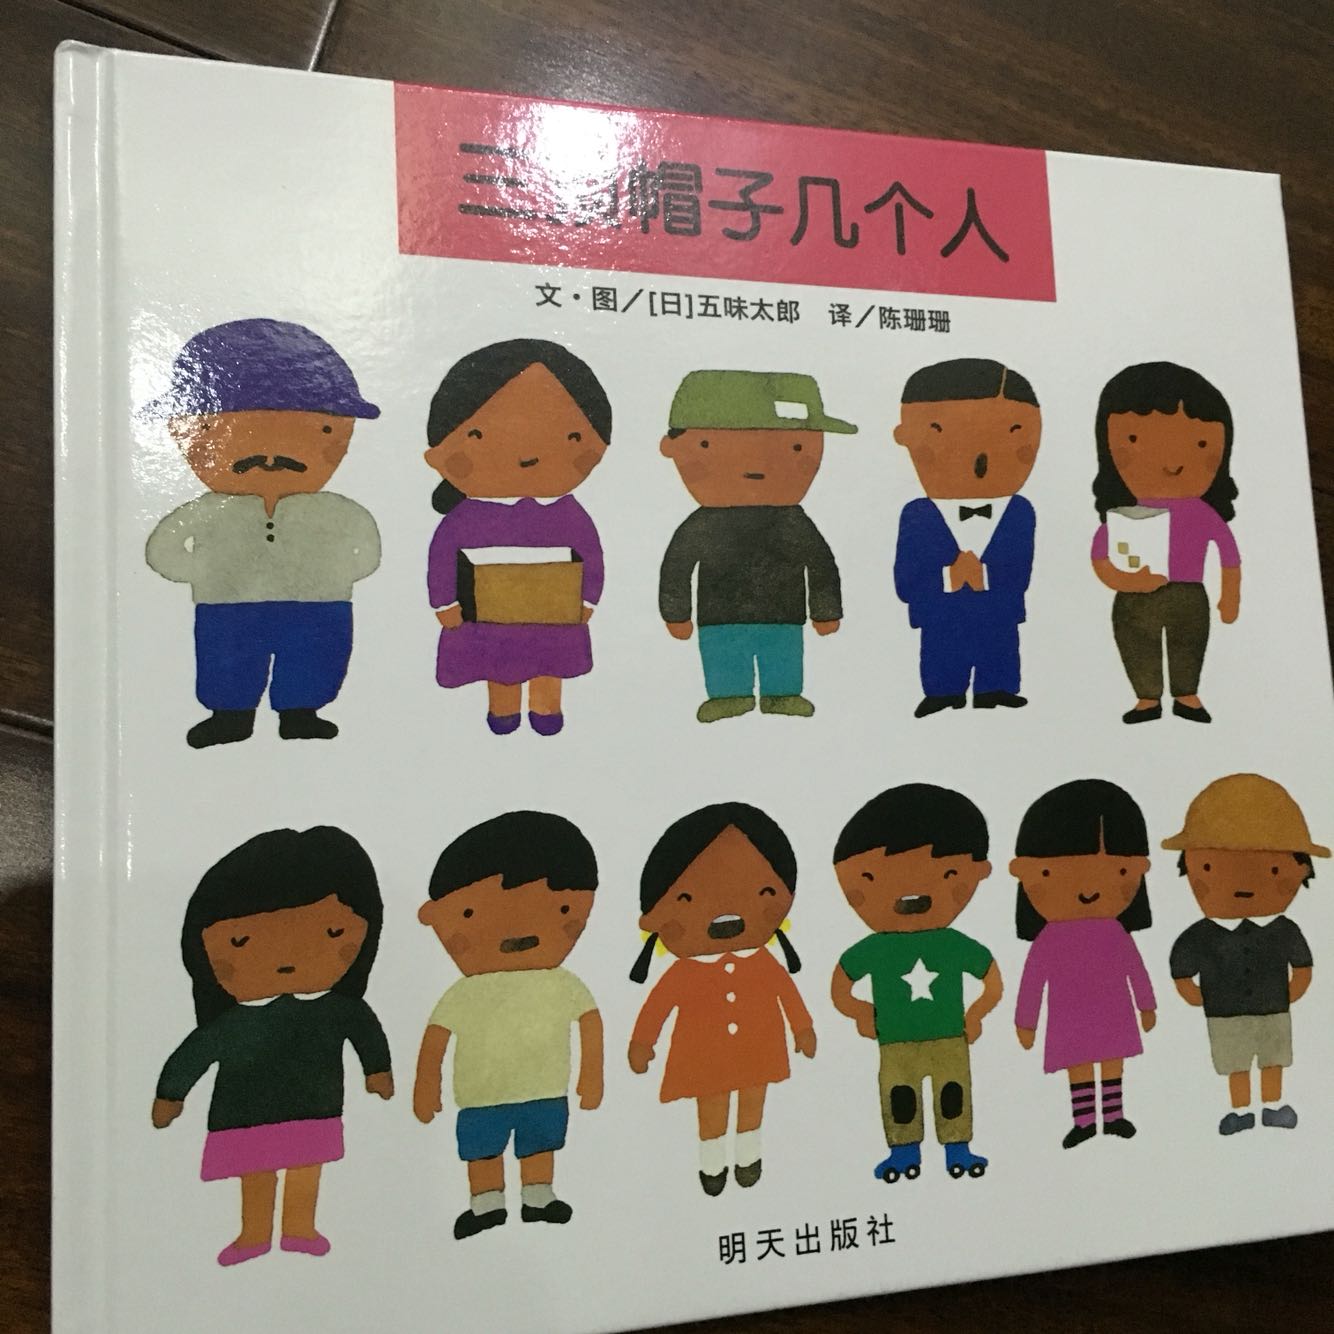 据说五味太郎的书必着眼睛都可以买买买，不知道孩子会不会喜欢。